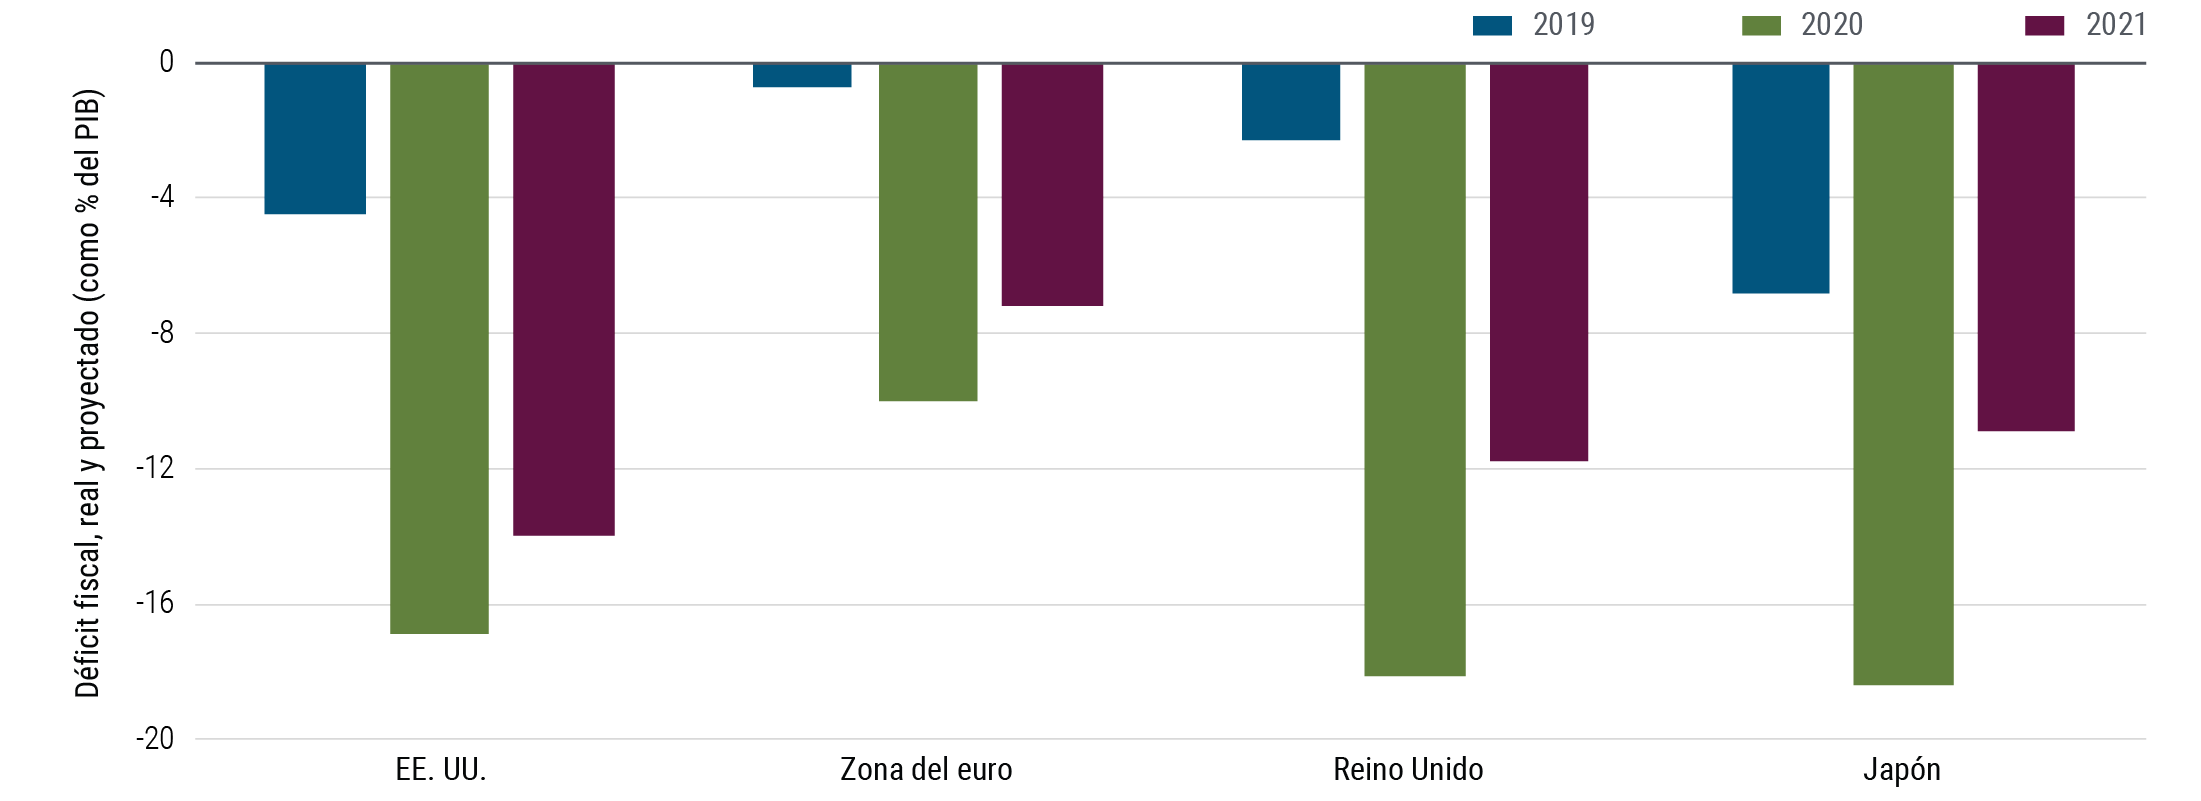 La Gráfica 2 es un gráfico de barras que proyecta los déficits fiscales de los Estados Unidos, la zona euro, el Reino Unido y Japón como porcentaje del PIB en los años 2019, 2020 y 2021. En los Estados Unidos, el déficit fiscal pasó del 5% en 2019 al 17% en 2020, y se prevé que en 2021 baje al 14%. En la zona del euro, el déficit fiscal pasó del 1% en 2019 al 10% en 2020, y se prevé que en 2021 baje al 7%. En el Reino Unido, el déficit fiscal registró un incremento considerable de 2019 a 2020, pasando del 2% al 12%; y se prevé que en 2021 se reduzca al 12%. El déficit fiscal de Japón también aumentó considerablemente, pasando del 7% en 2019 al 18% en 2020; y se prevé que en 2021 se reduzca al 11%.